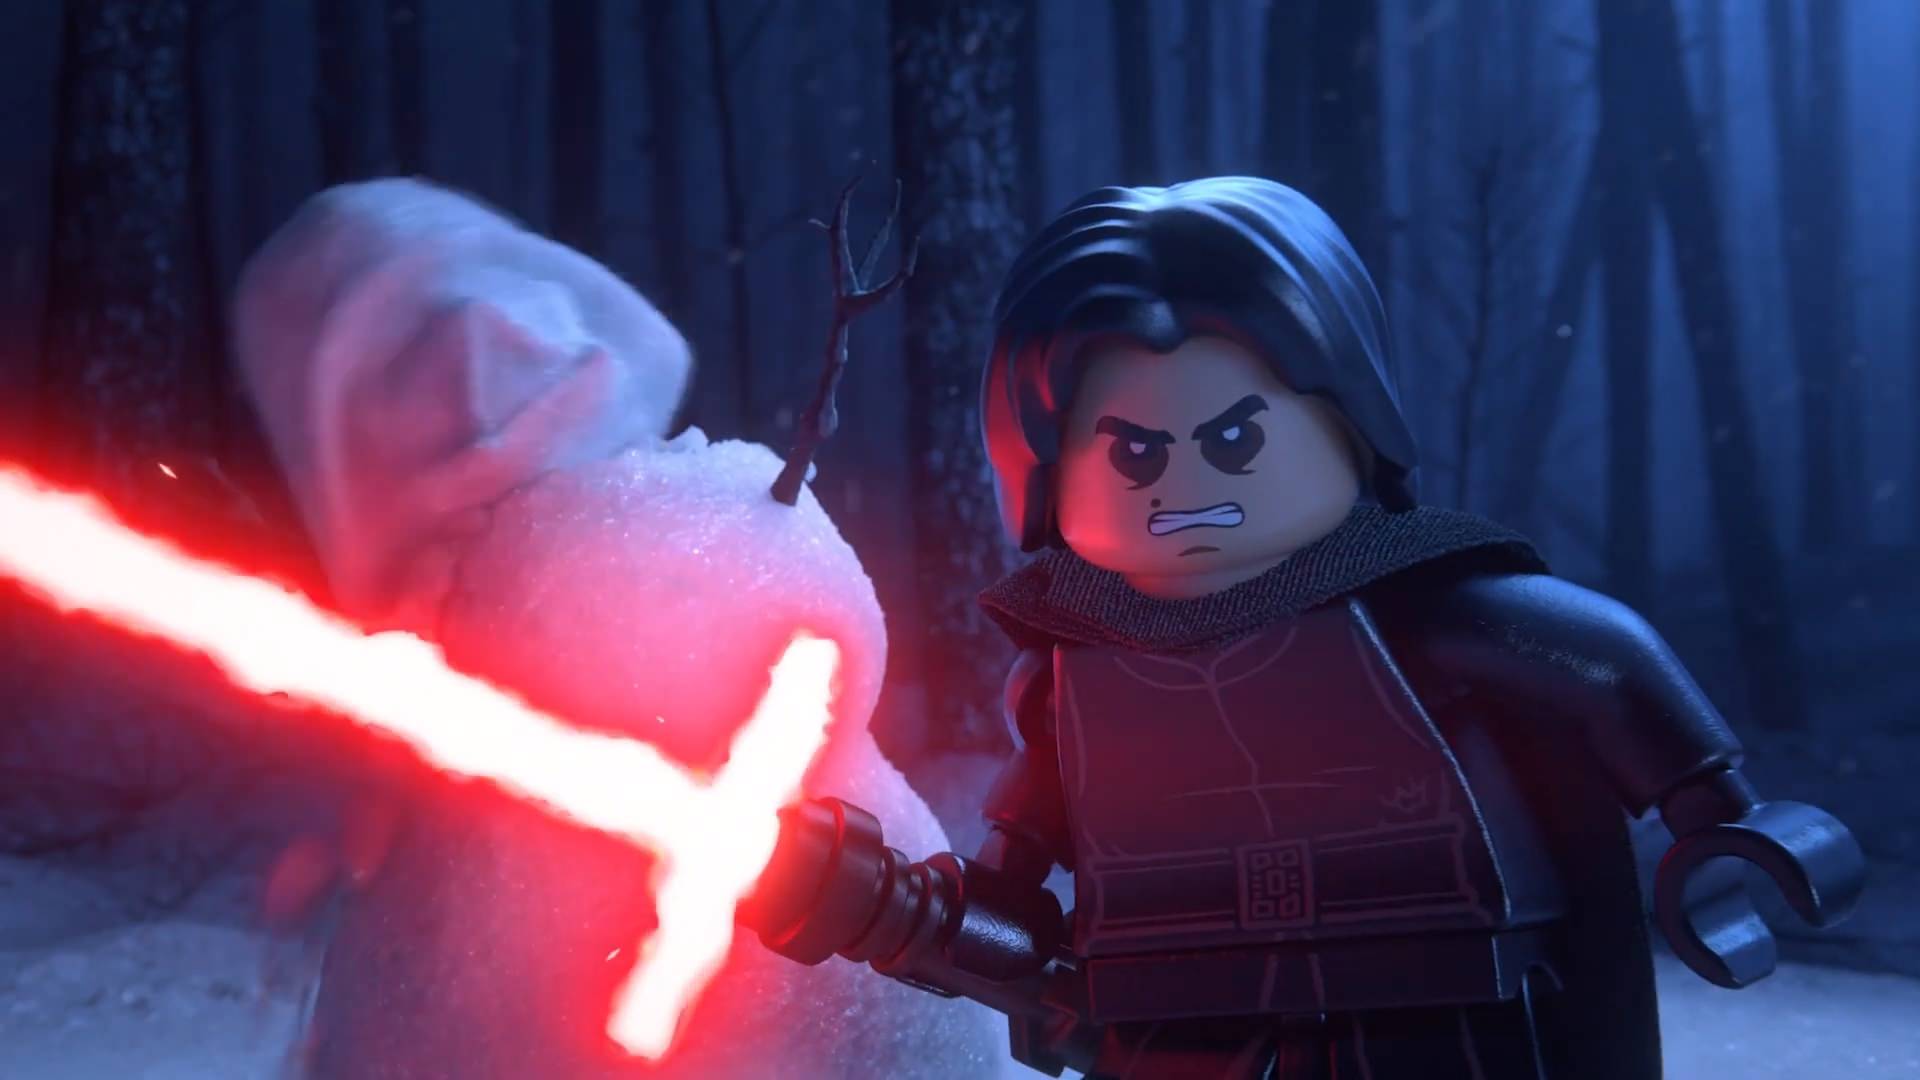 اعلام تاریخ عرضه بازی Lego Star Wars با پخش تریلر جدید گیم پلی